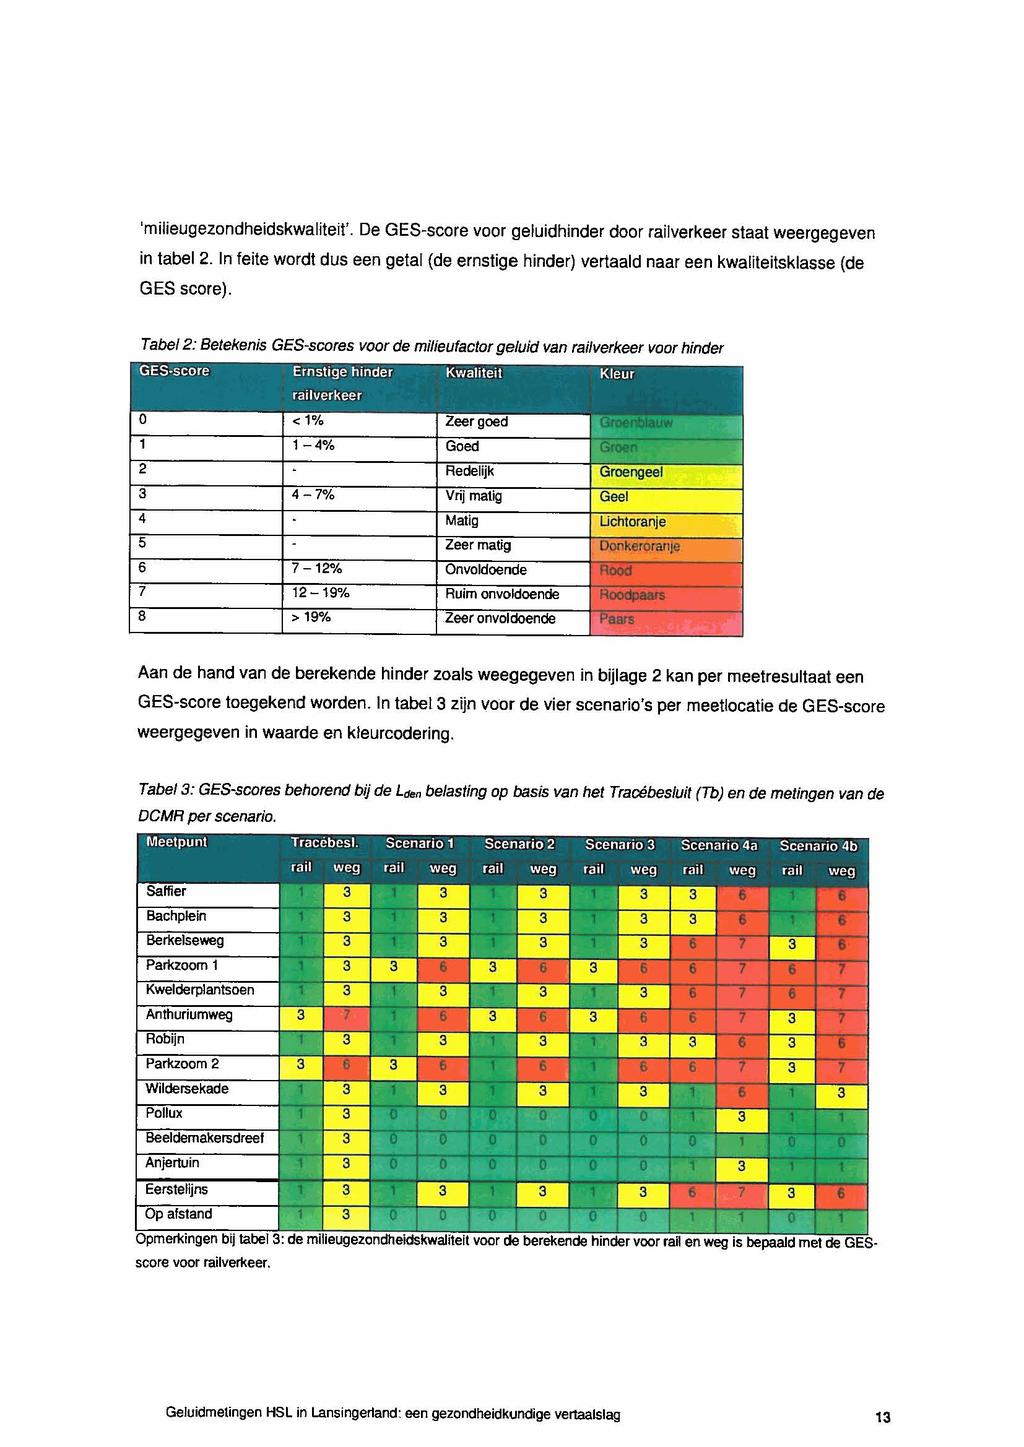 'milieugezondheidskwaliteit'. De GES-score voor geluidhinder door railverkeer staat weergegeven in tabel 2.